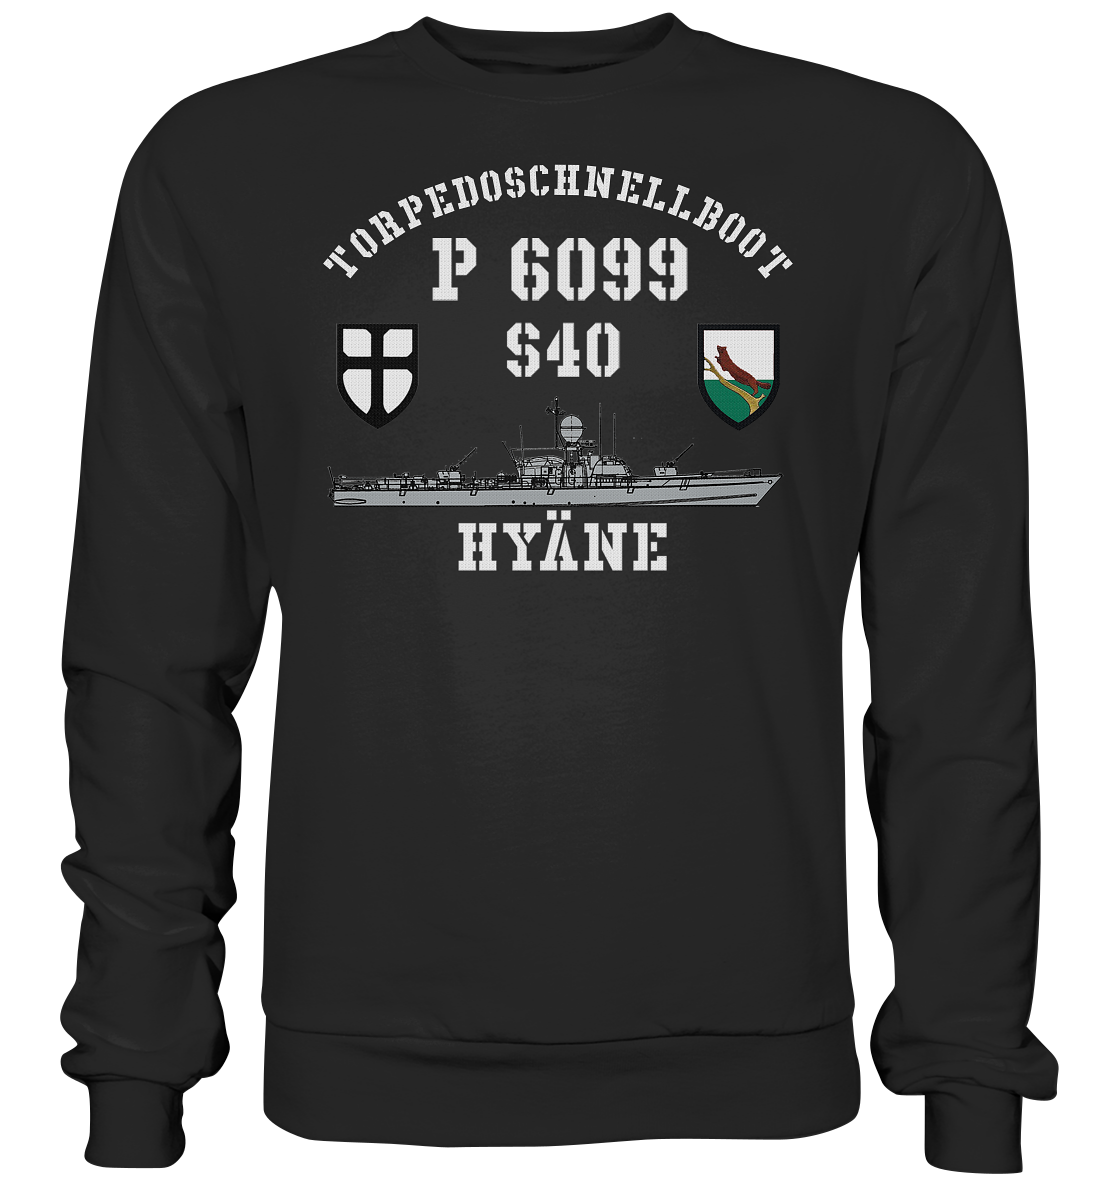 S40 HYÄNE - Premium Sweatshirt